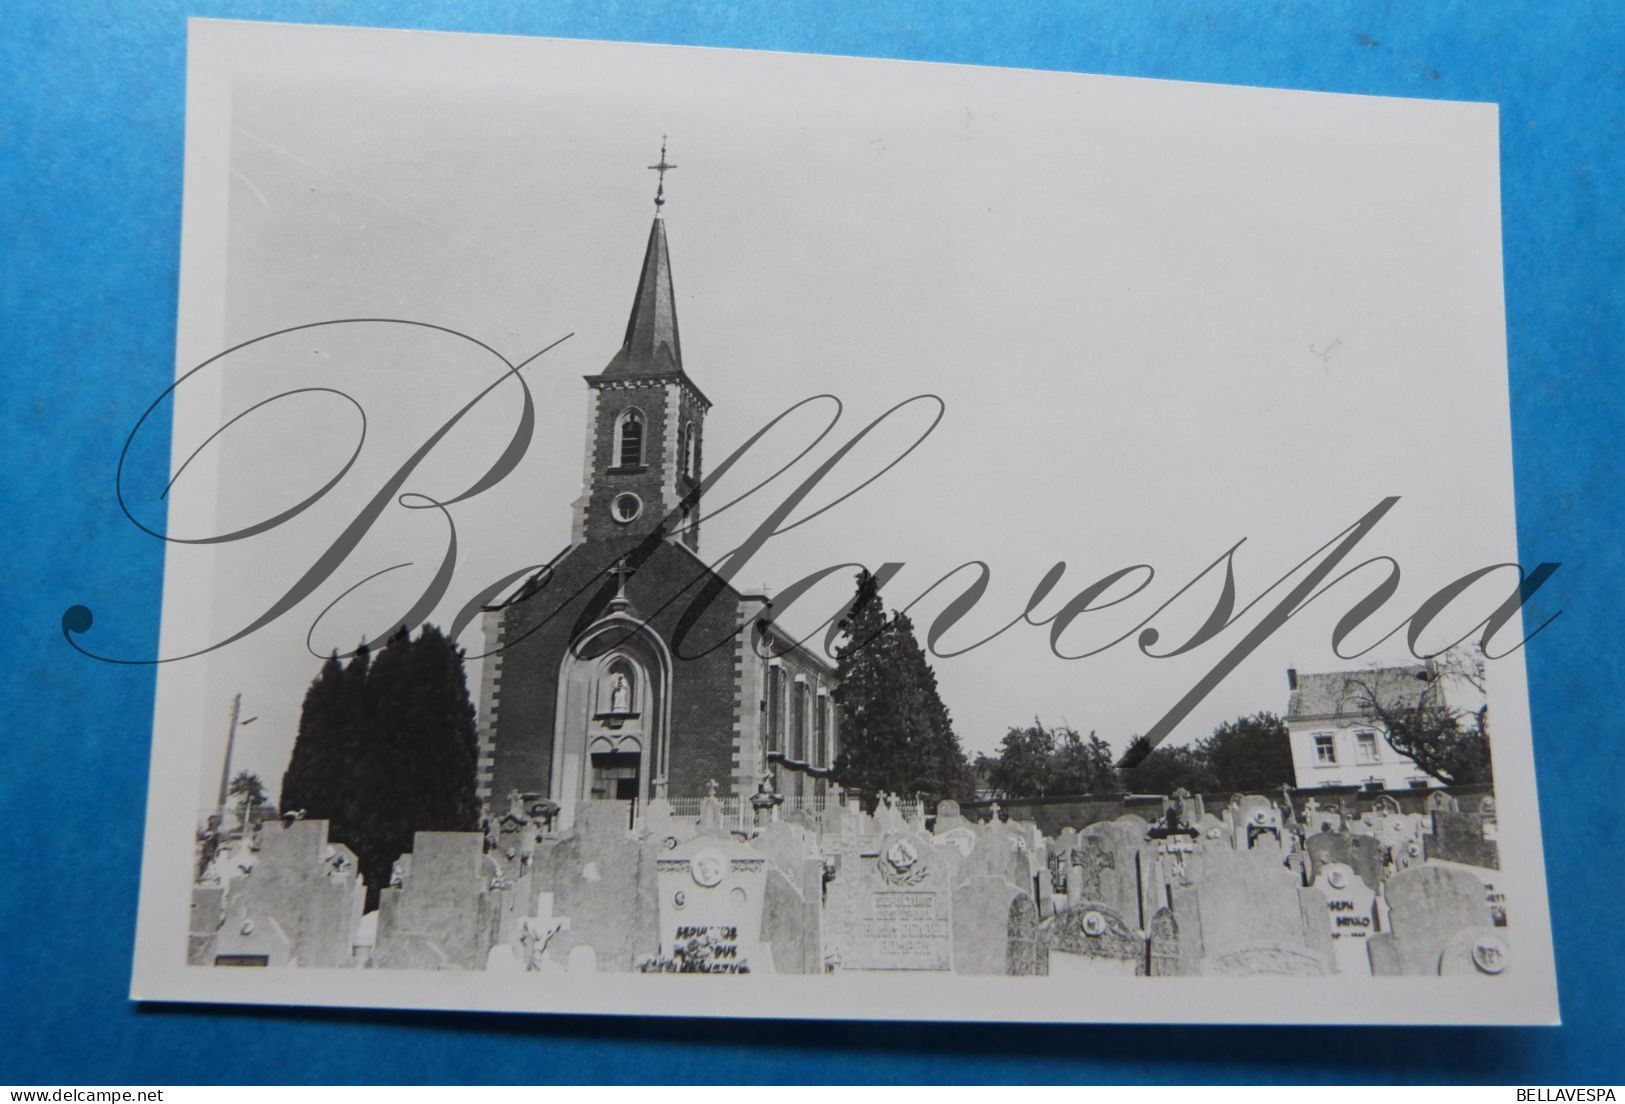 Retinne  Eglise  Foto-Photo Prive Pris 1977 - Orte